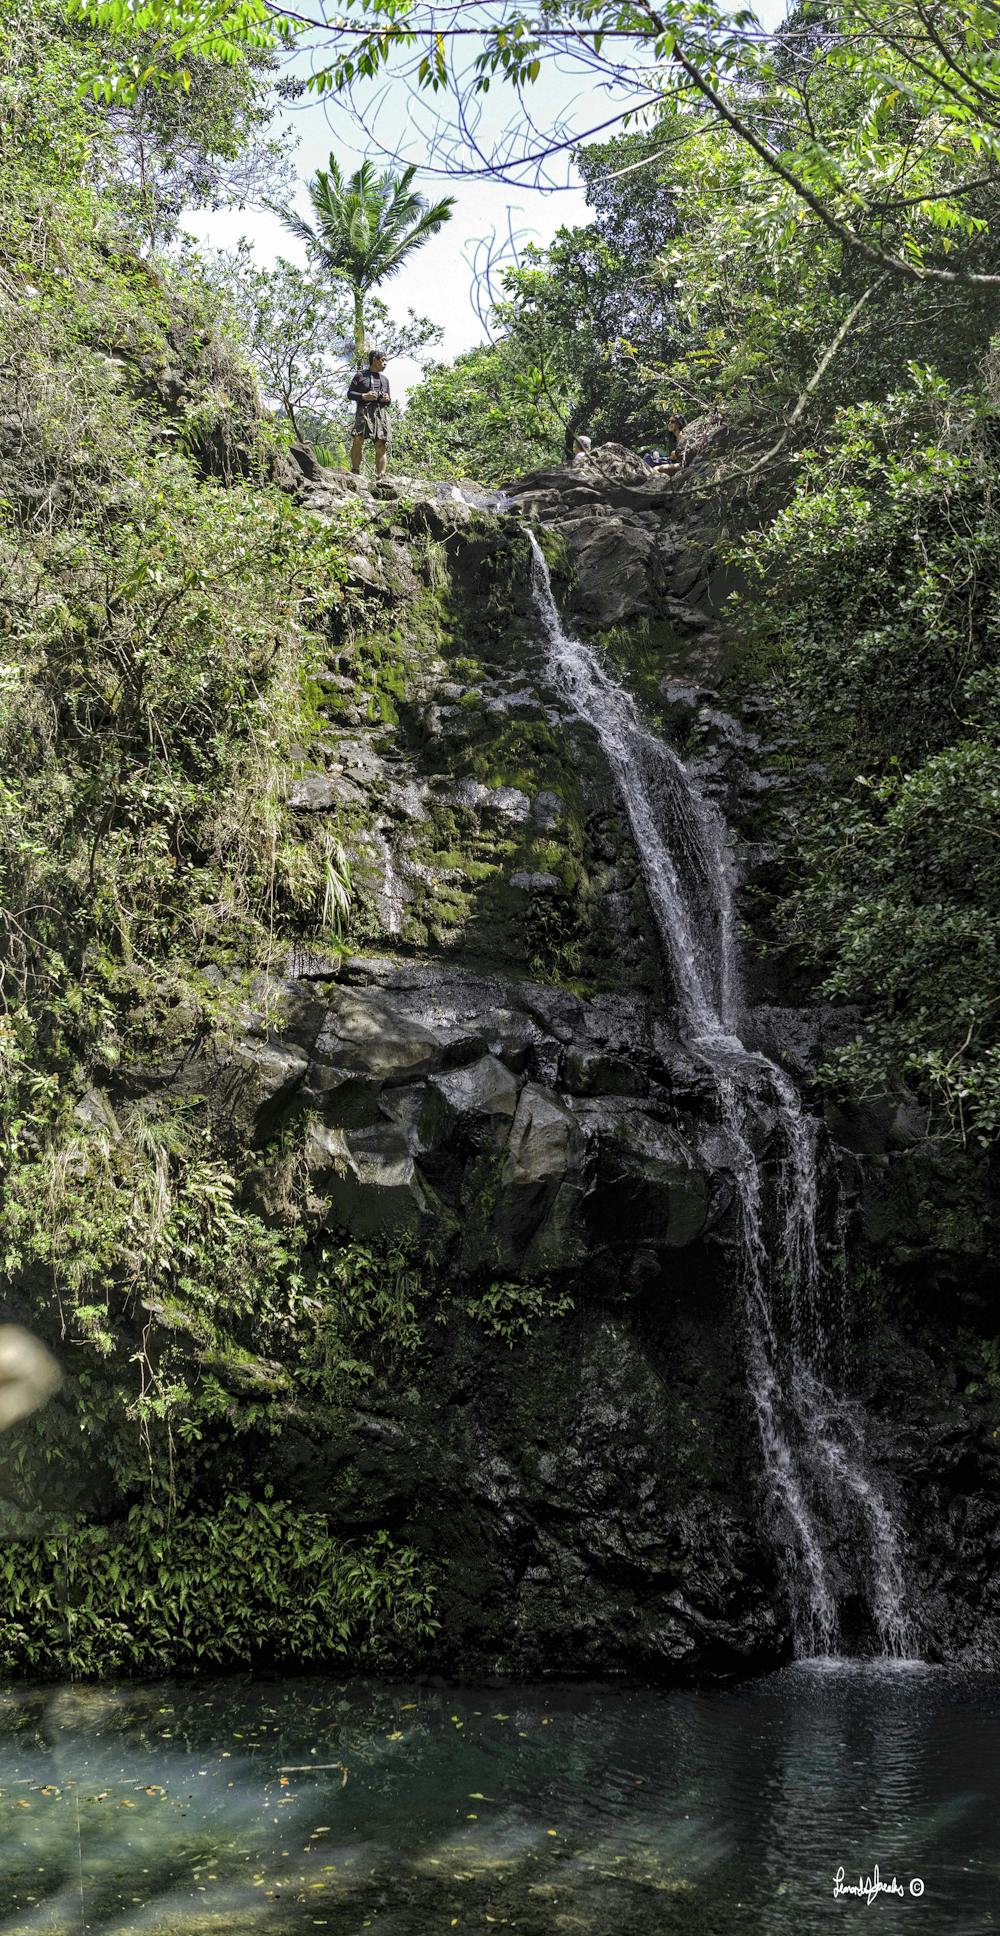 Waimano Falls